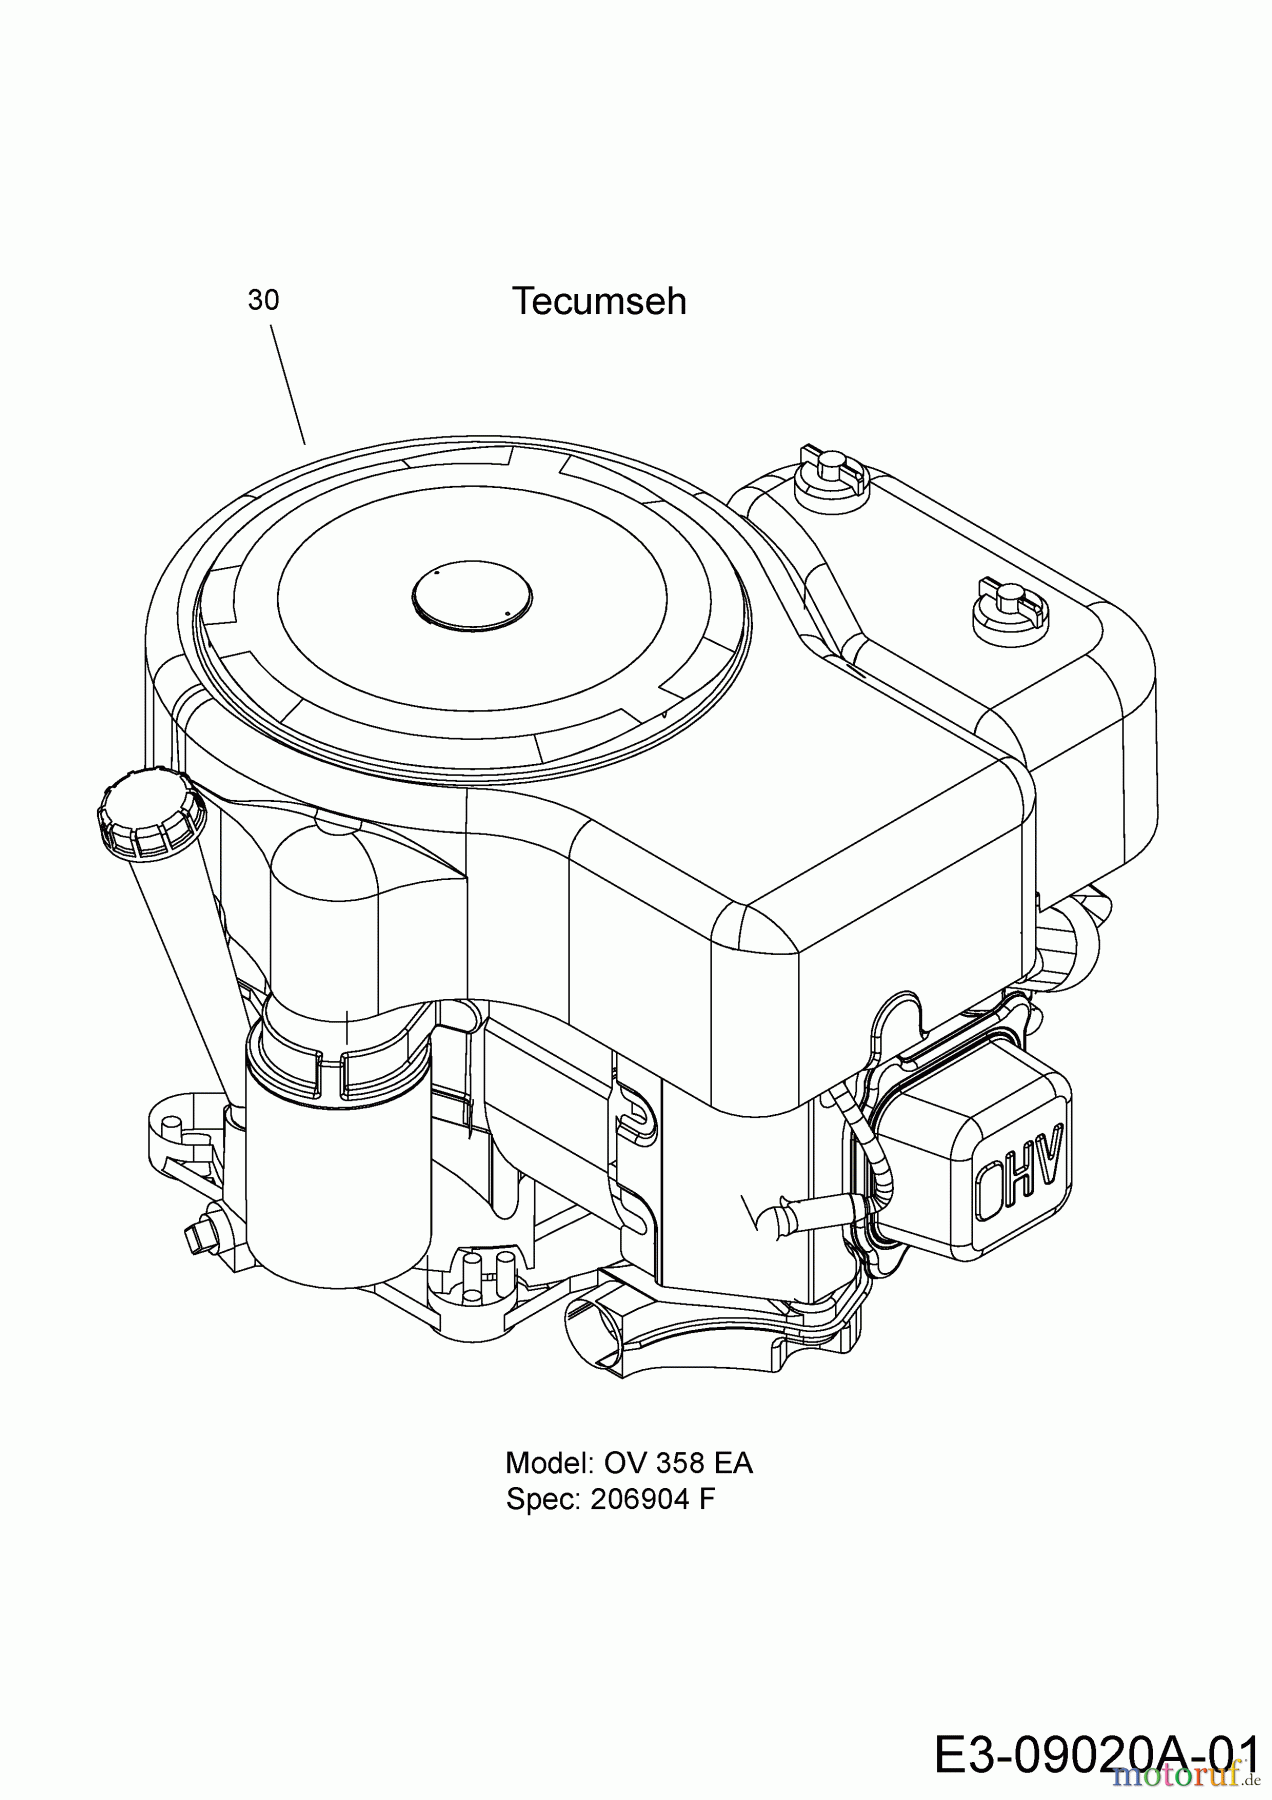  MTD Rasentraktoren RS 115/96 13B1662F600  (2004) Motor Tecumseh